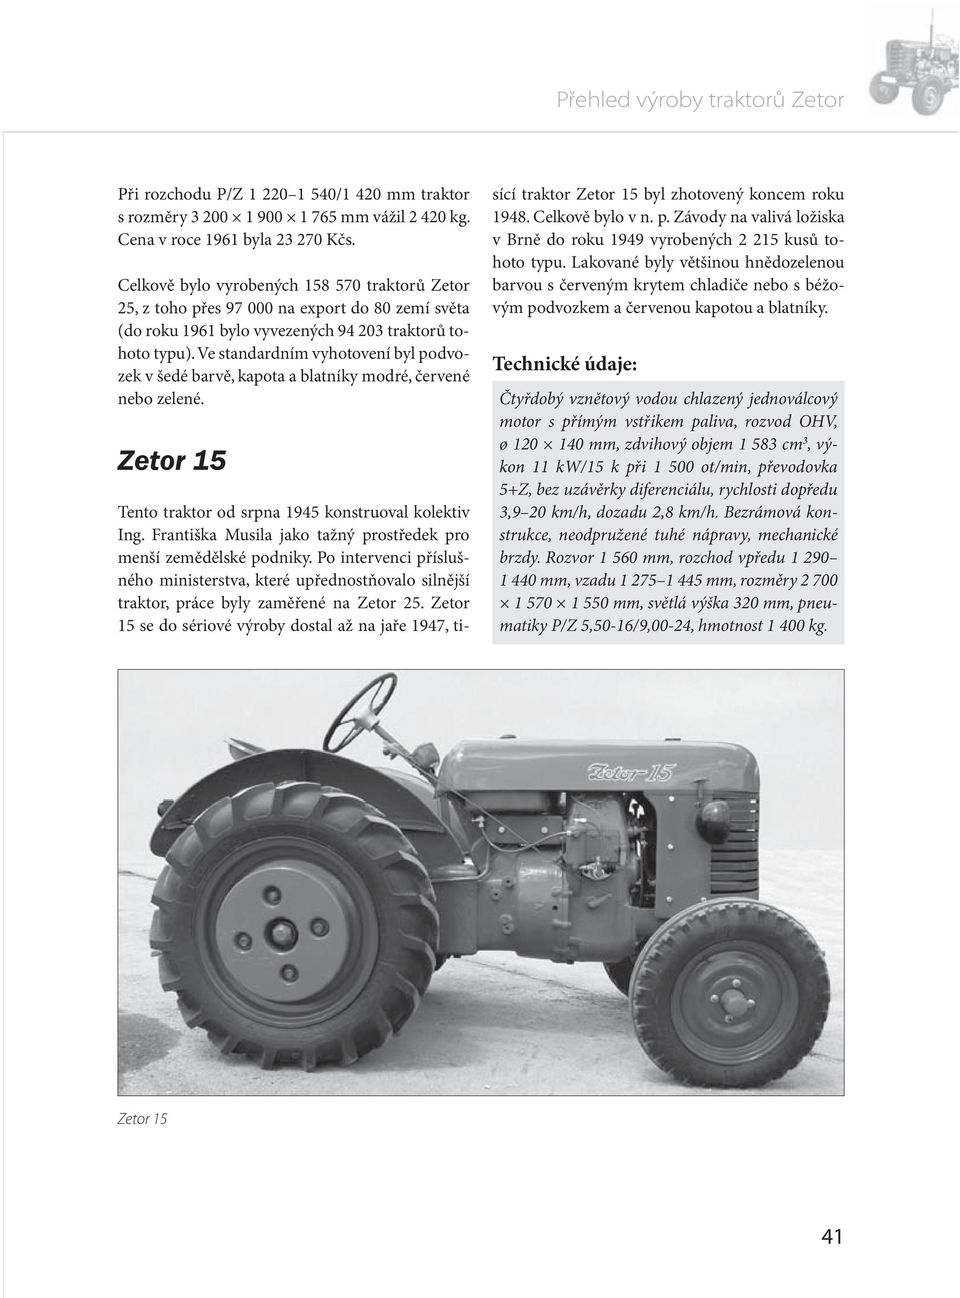 Ve standardním vyhotovení byl podvozek v šedé barvě, kapota a blatníky modré, červené nebo zelené. Zetor 15 Tento traktor od srpna 1945 konstruoval kolektiv Ing.